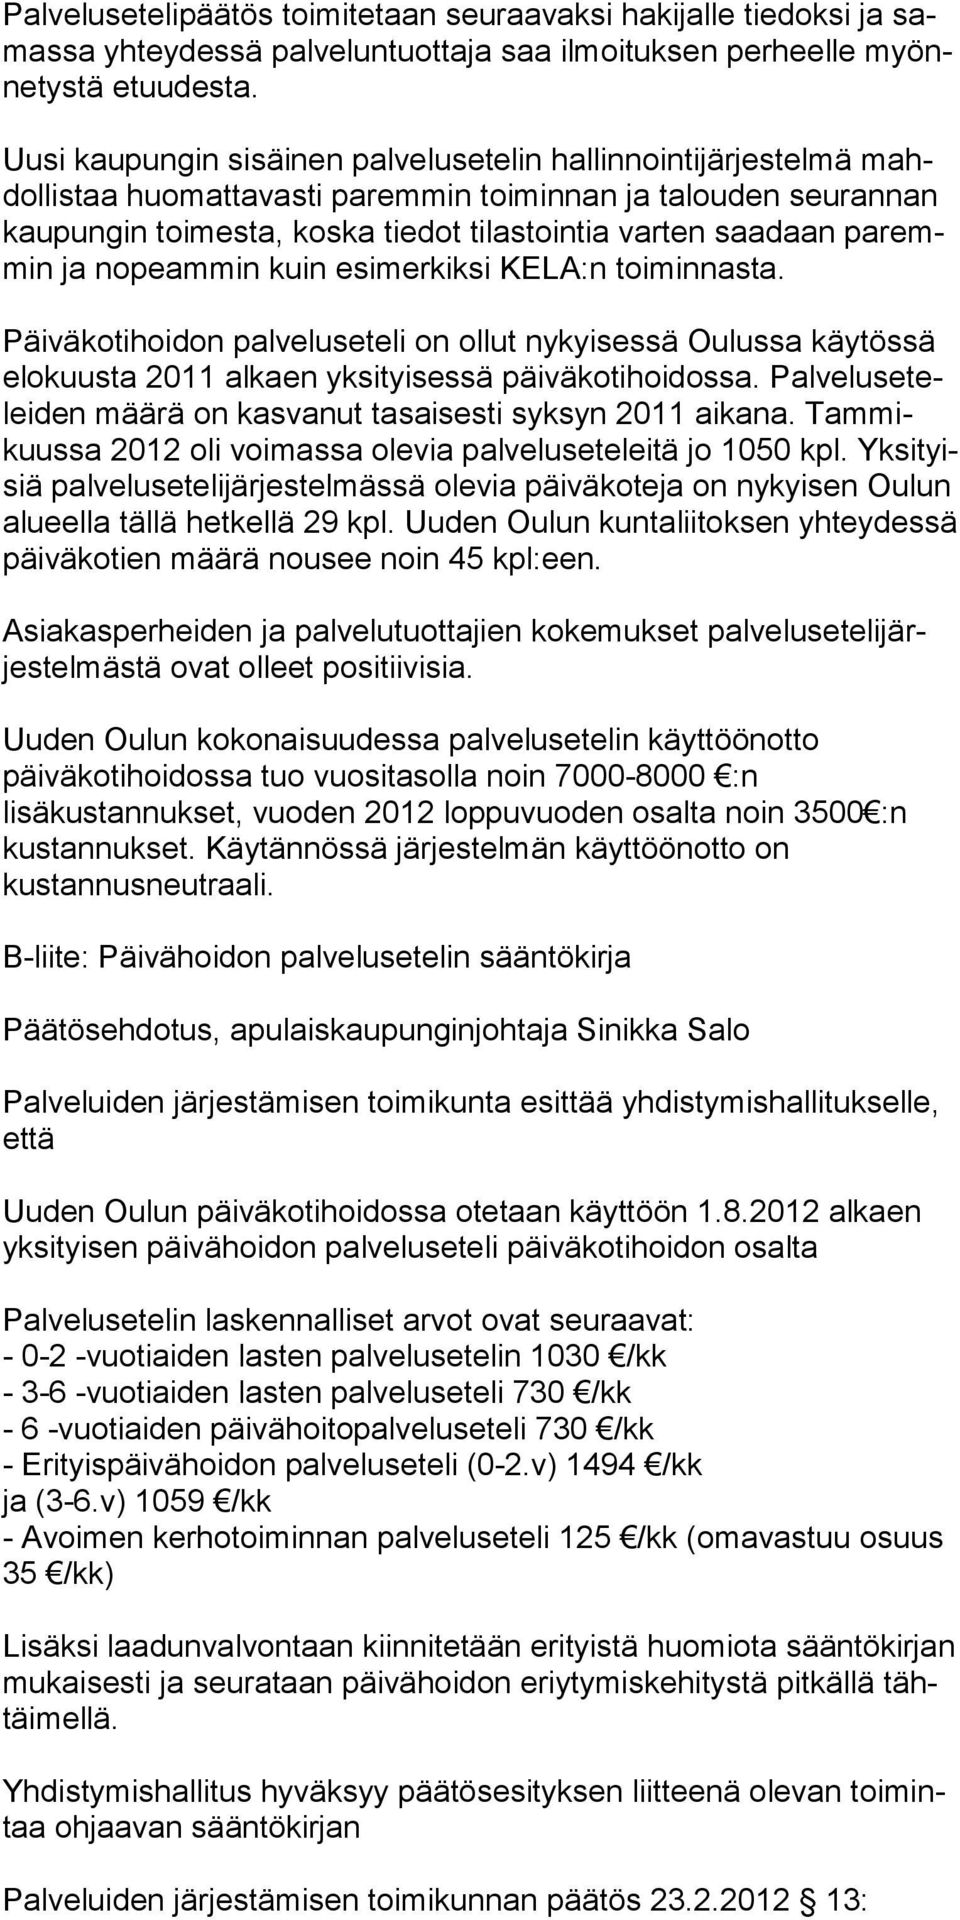 paremmin ja nopeammin kuin esi merkiksi KELA:n toiminnasta. Päiväkotihoidon palveluseteli on ollut nykyisessä Oulussa käytössä elokuusta 2011 alkaen yksityisessä päiväkotihoidossa.